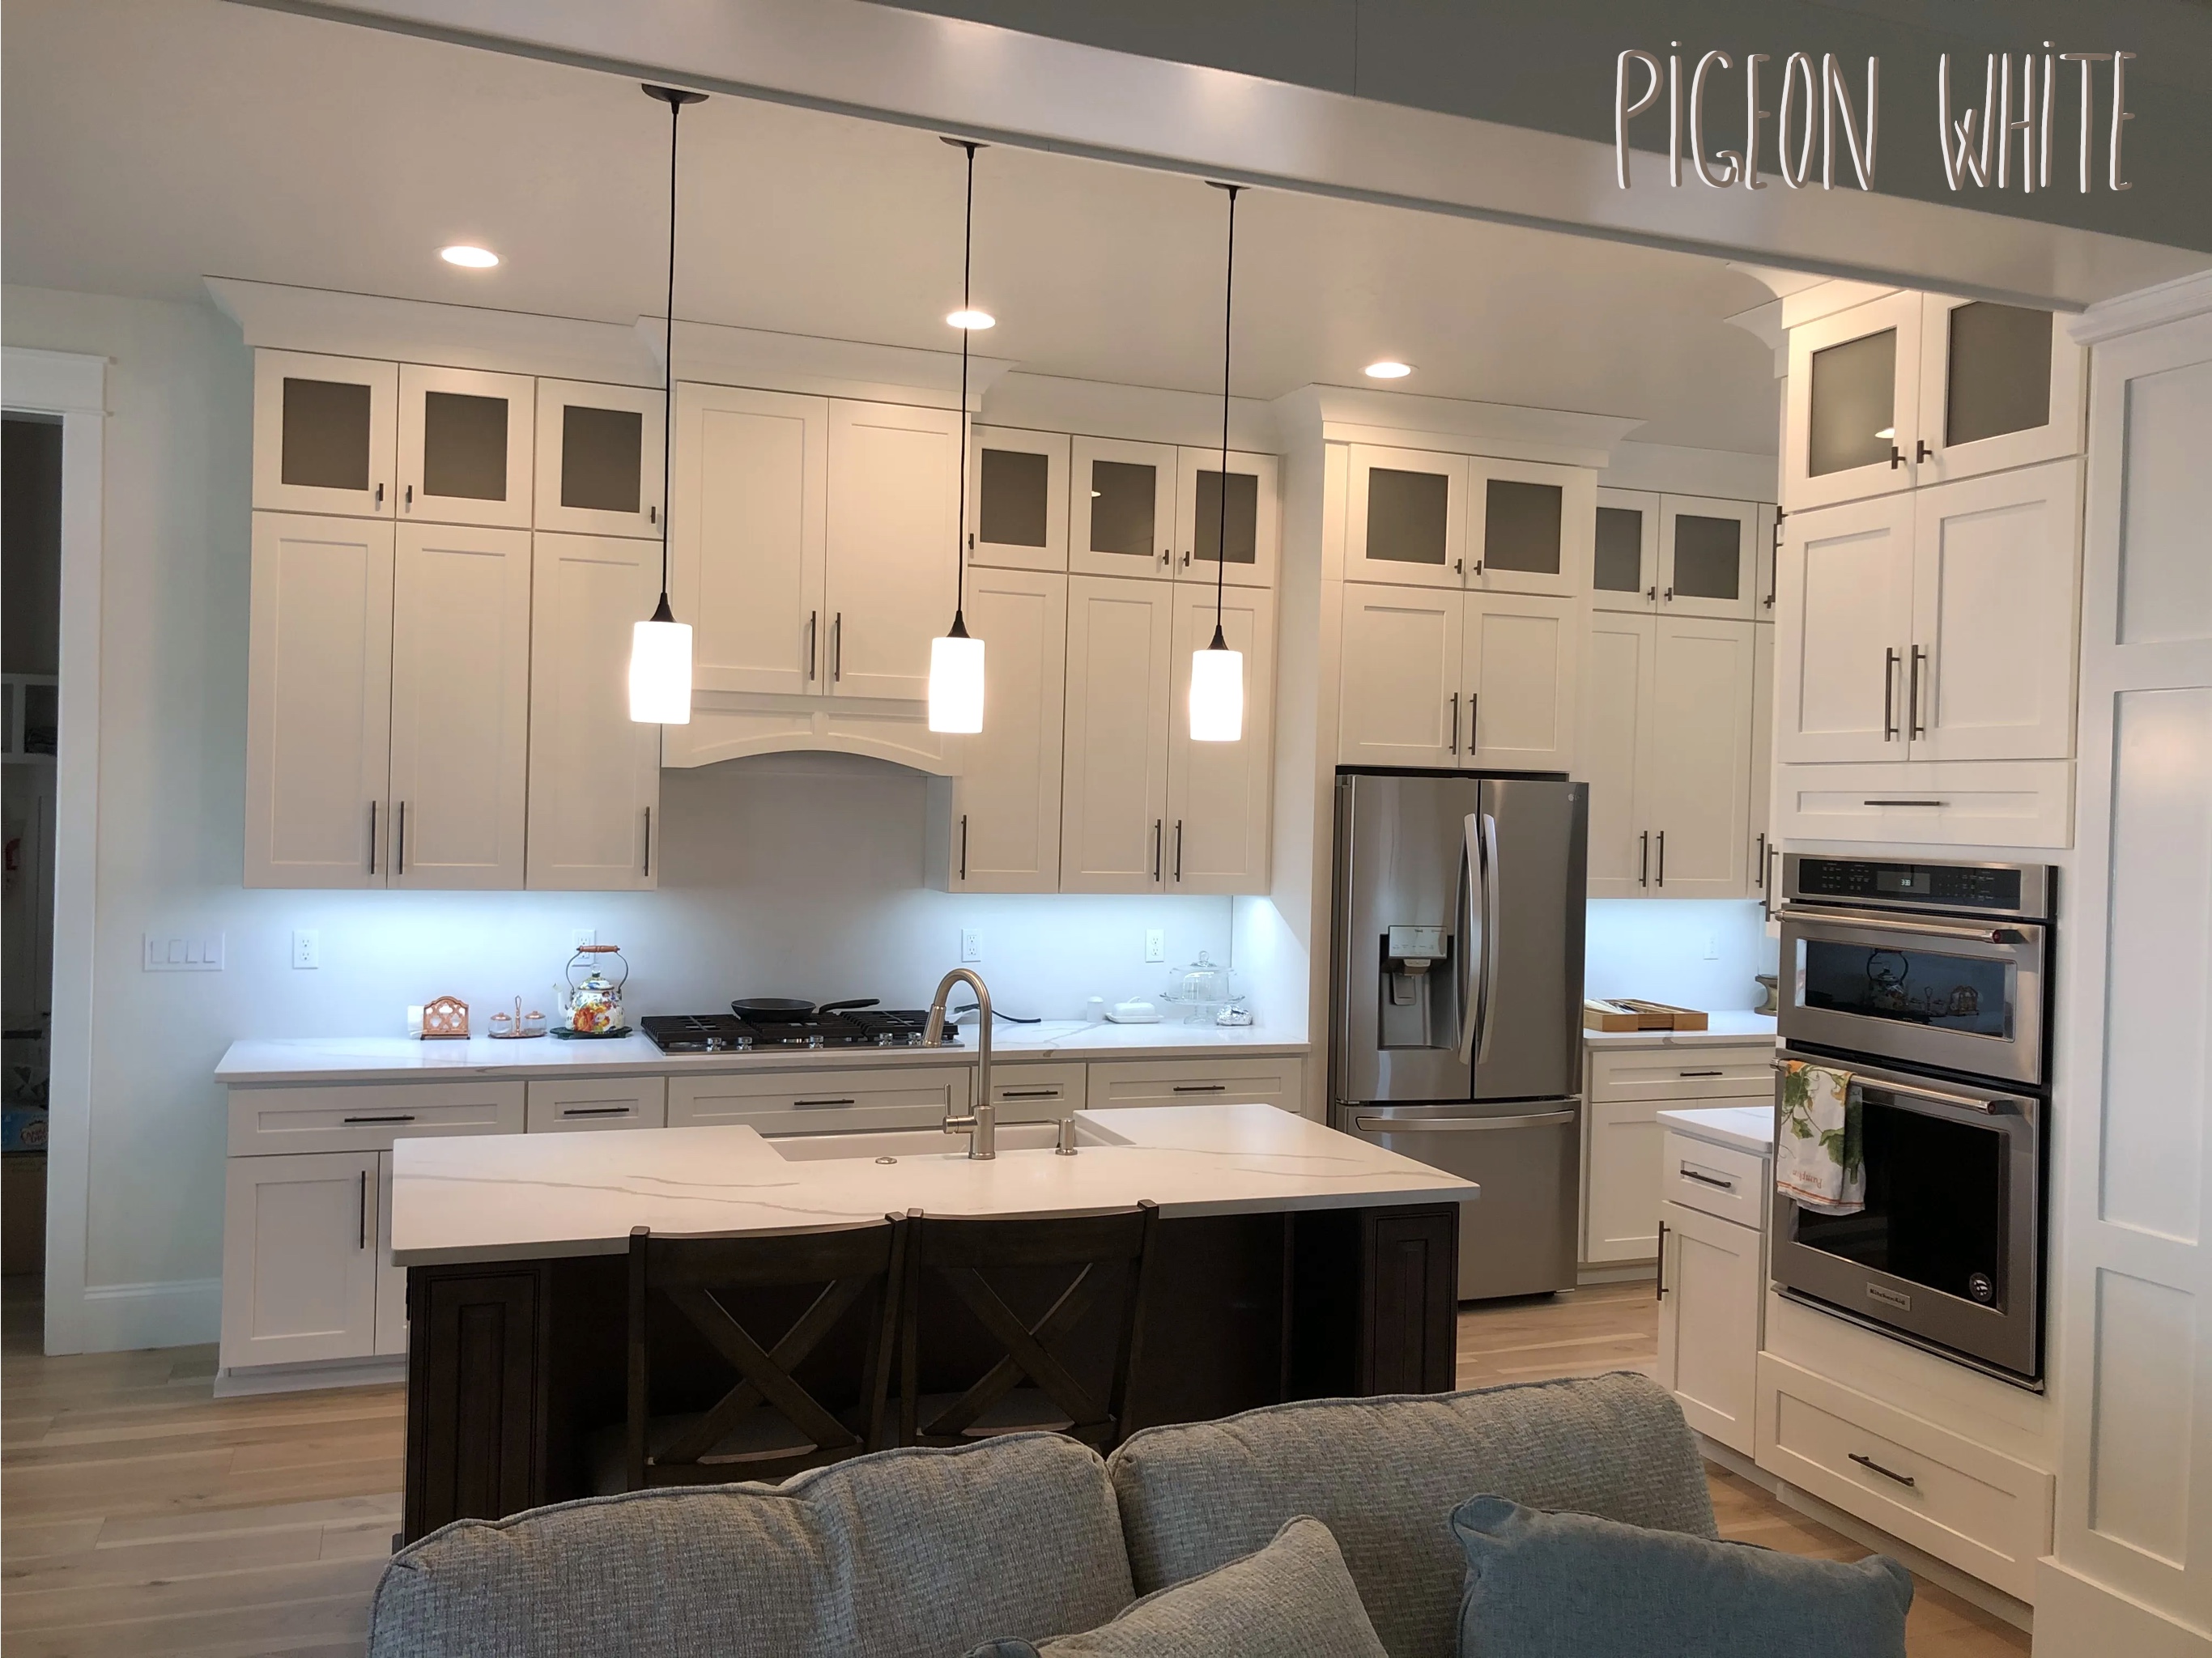 pigeon white kitchen cabinet